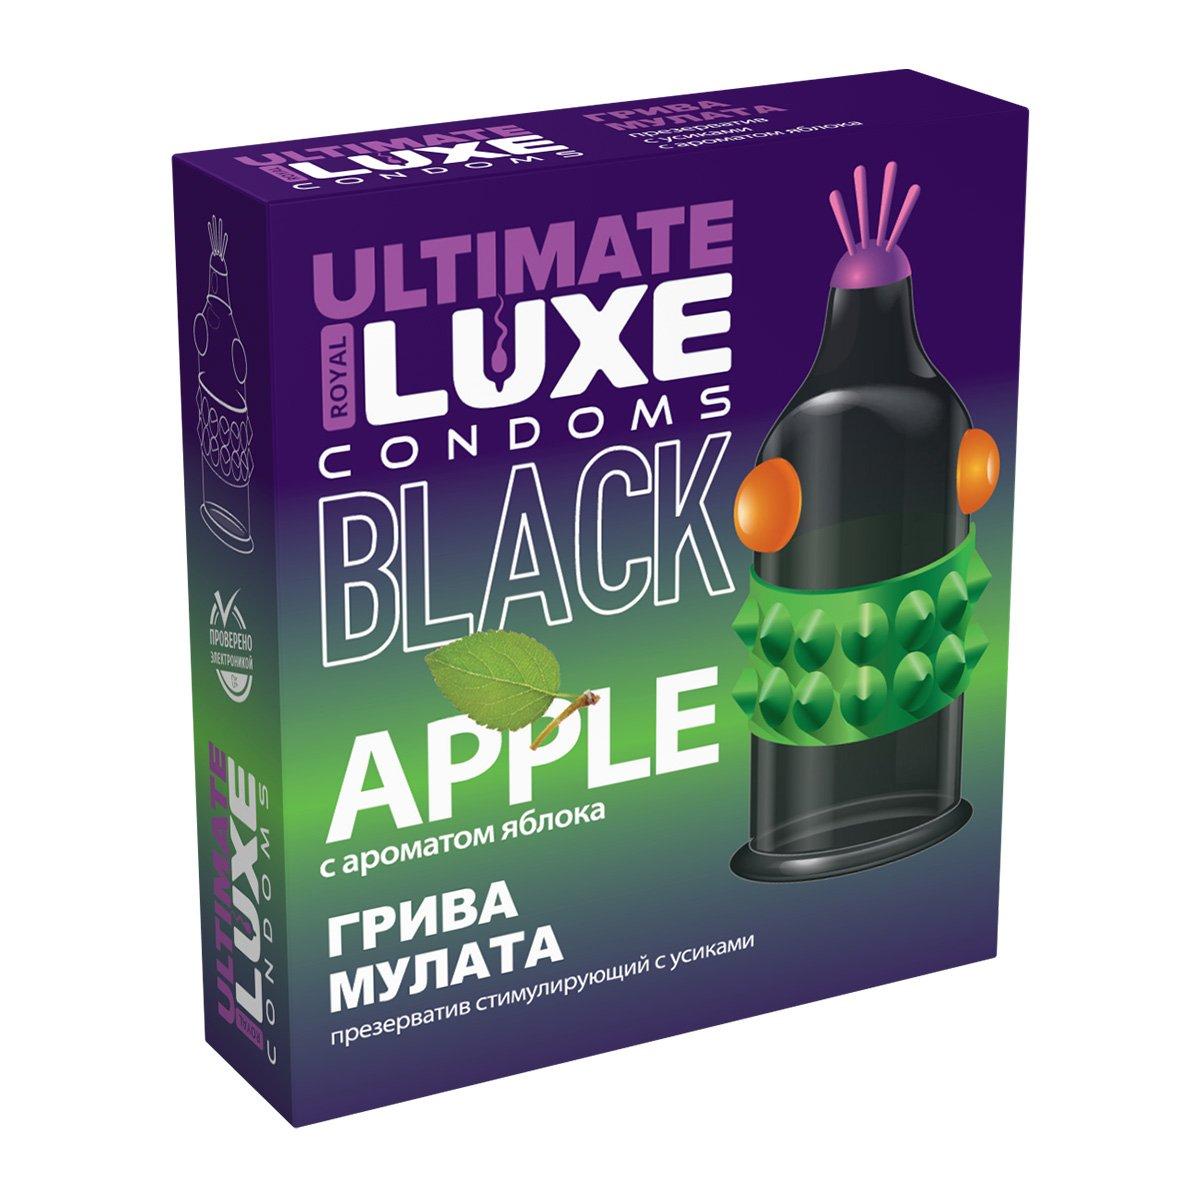 Презерватив LUXE BLACK ULTIMATE "ГРИВА МУЛАТА" (с ароматом яблока), 1 штука